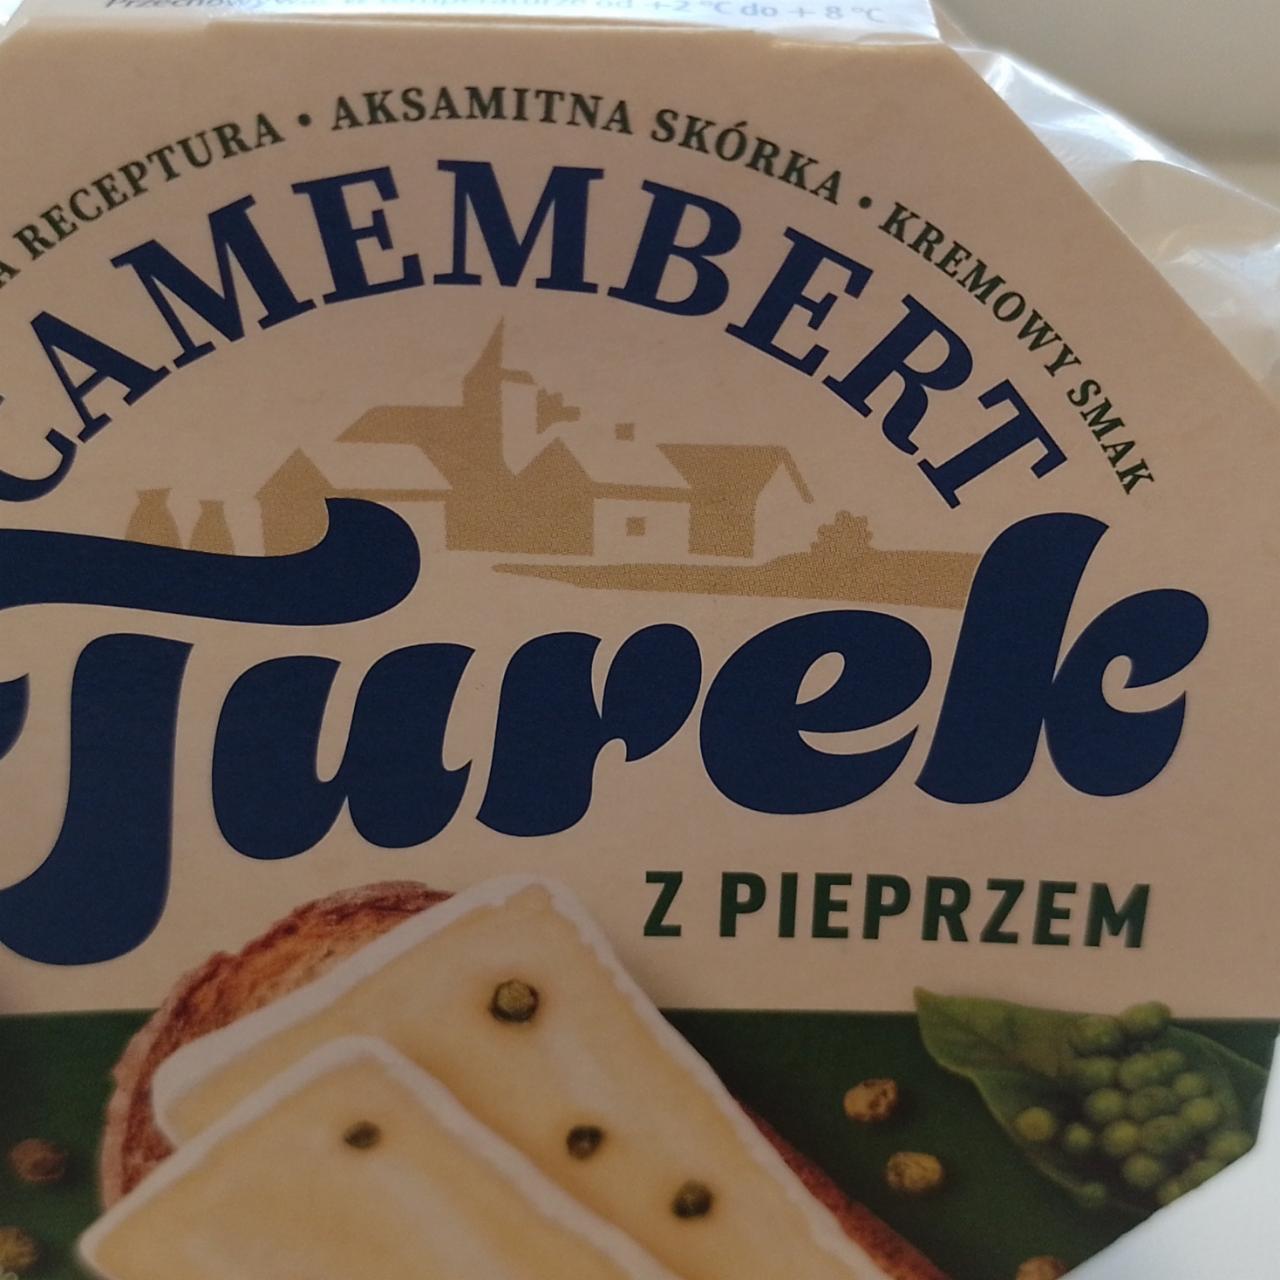 Zdjęcia - Camembert z pieprzem Turek